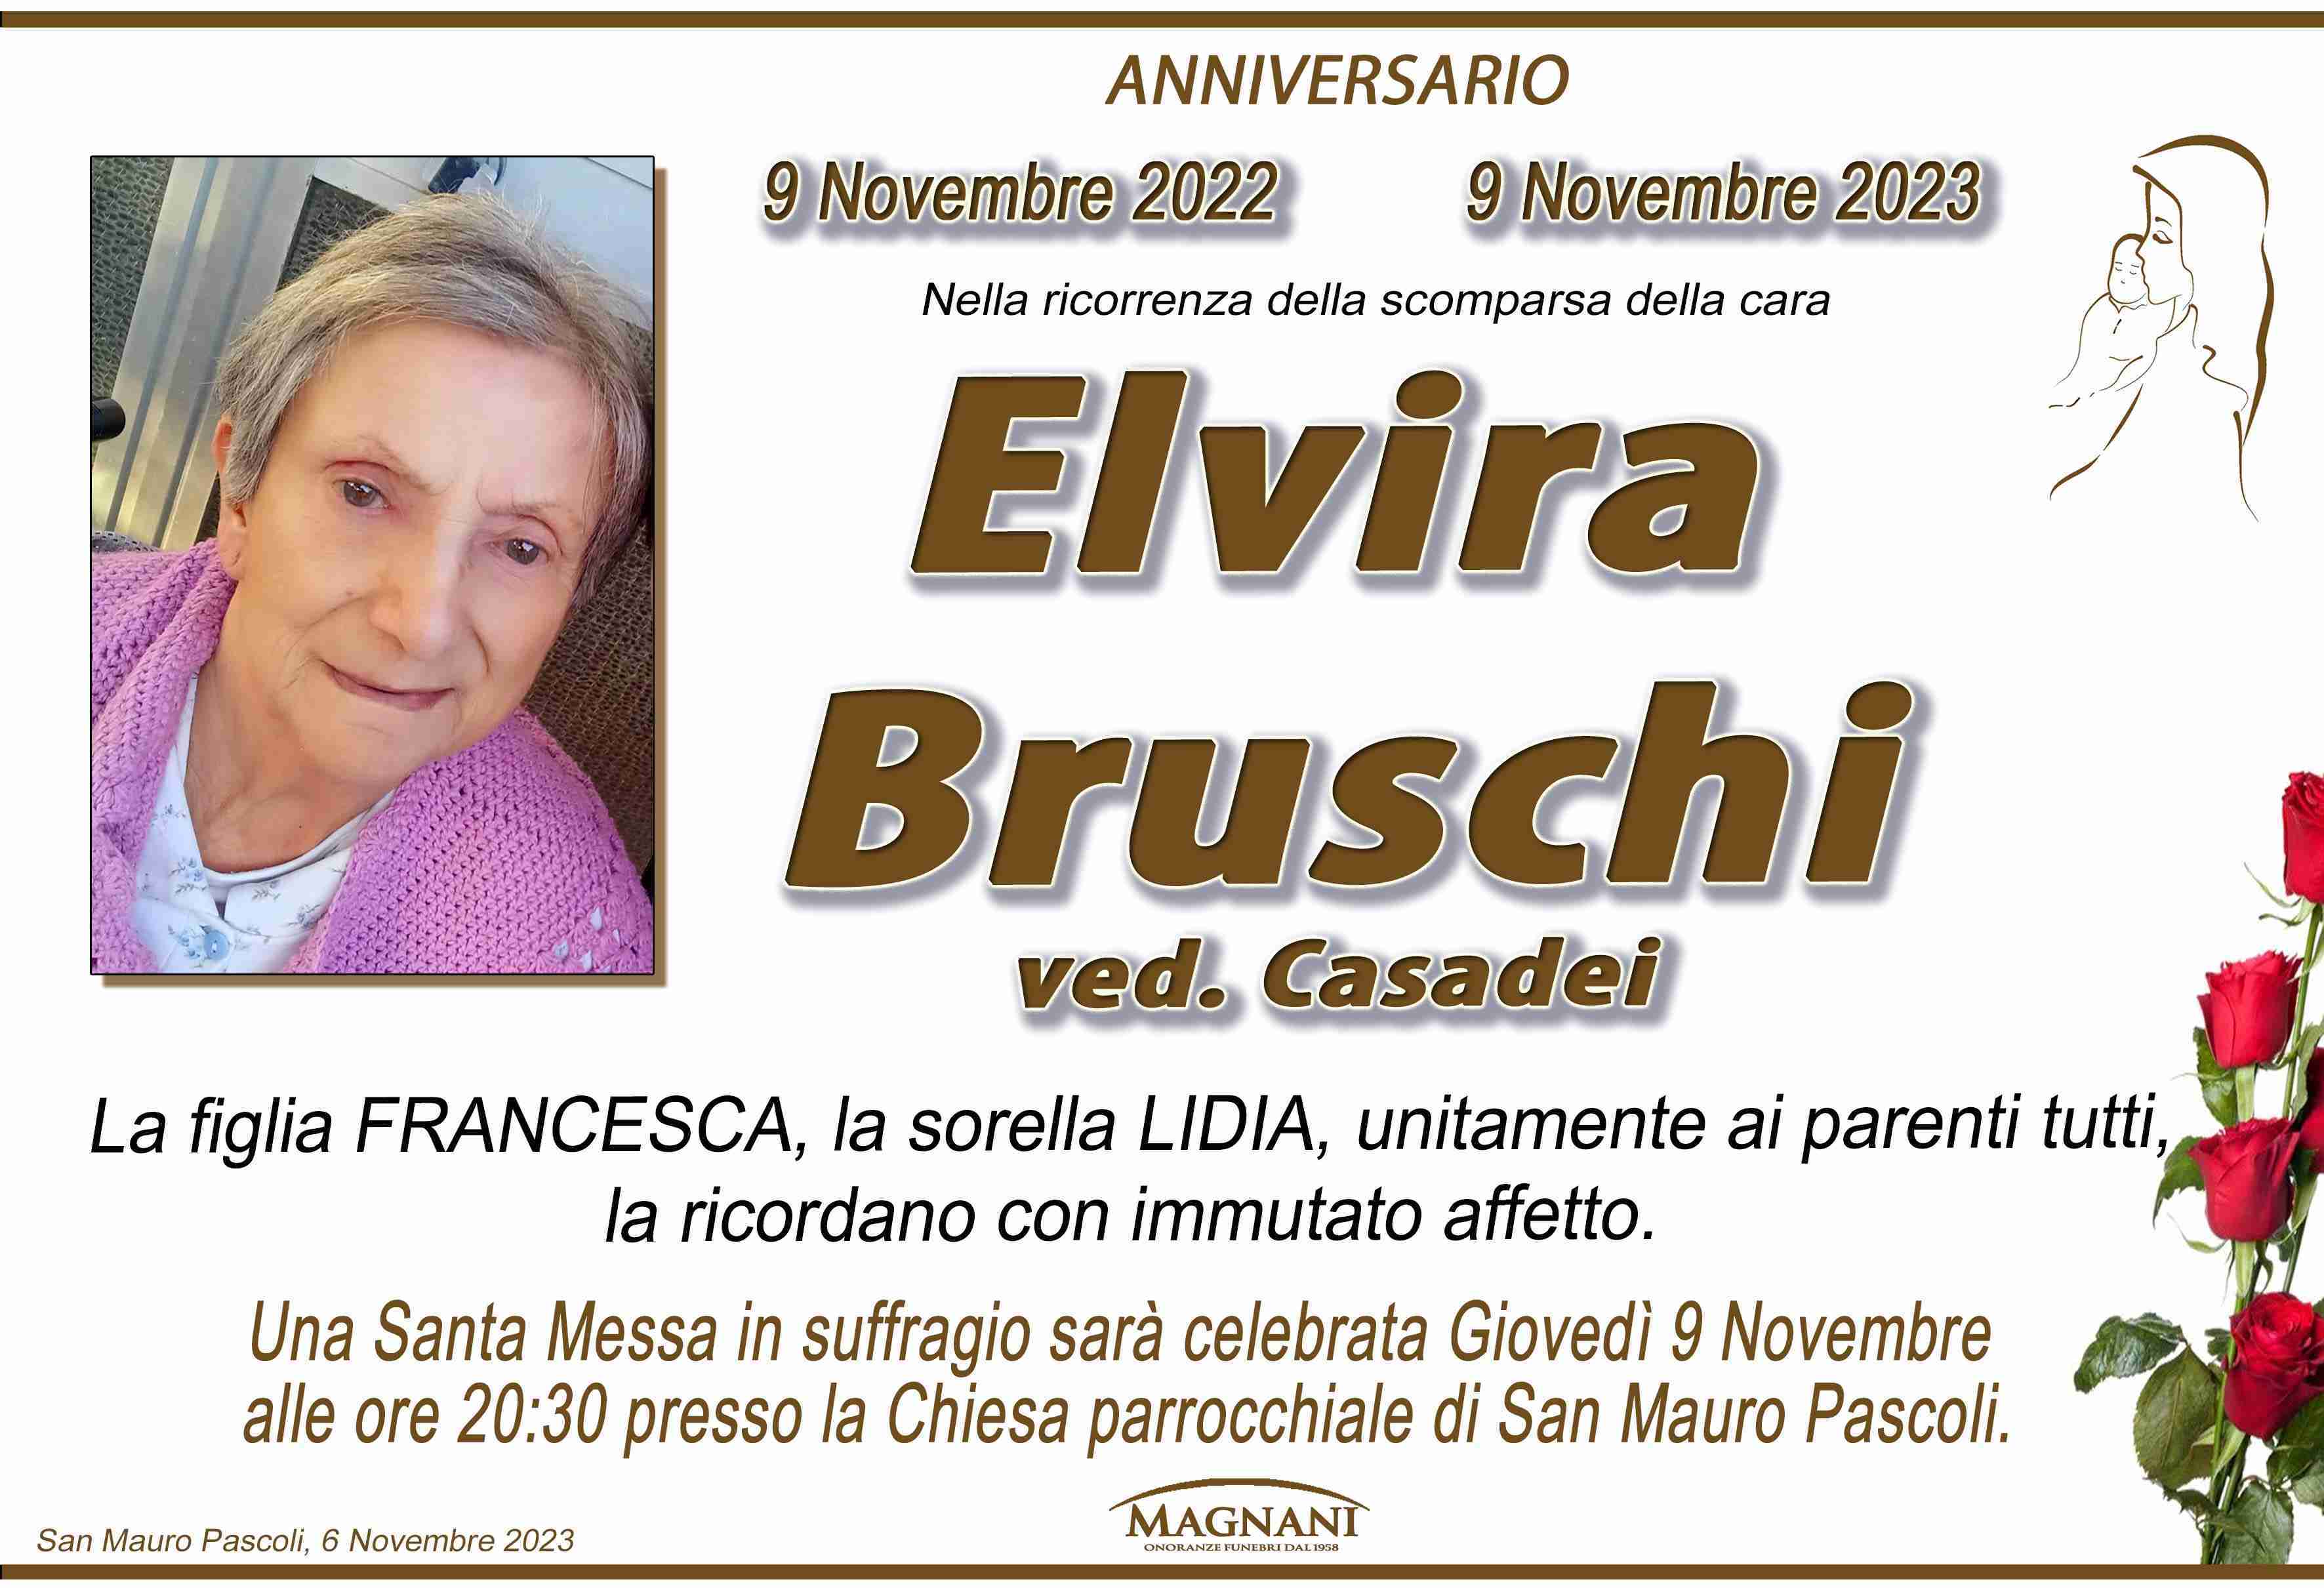 Elvira Bruschi